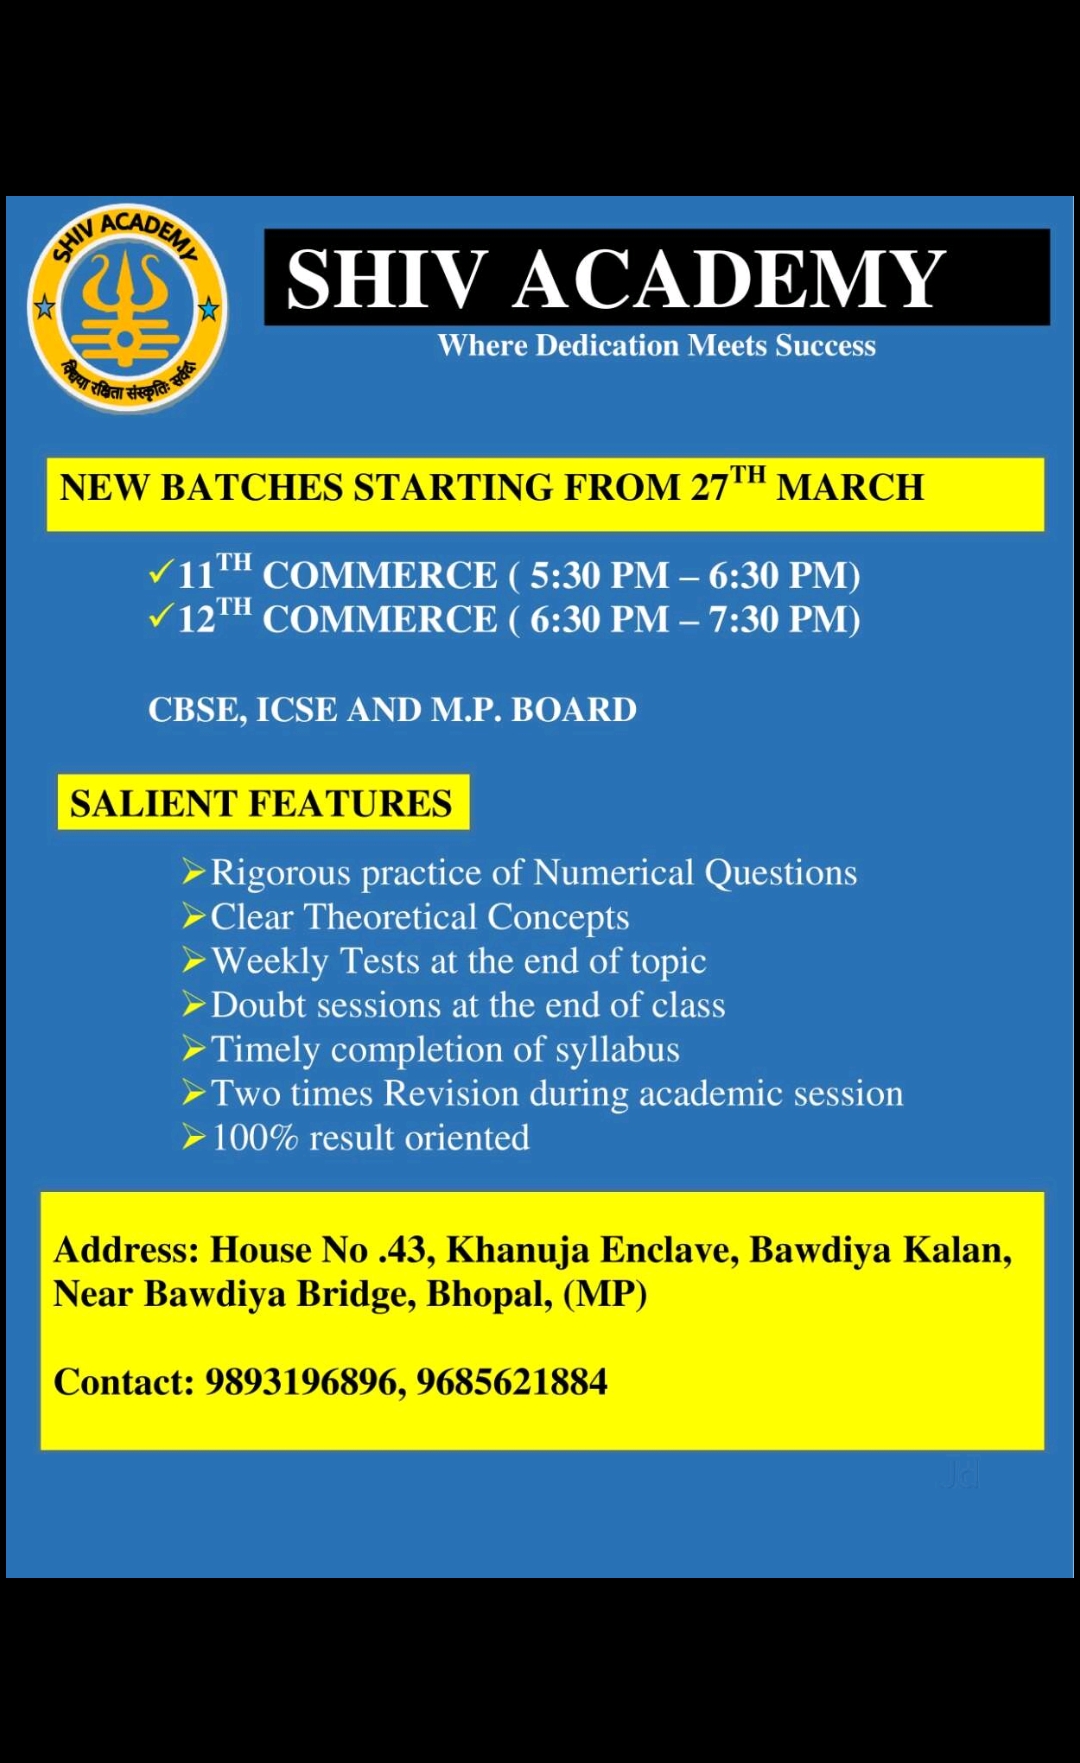 Shiv Academy in Bhopal 